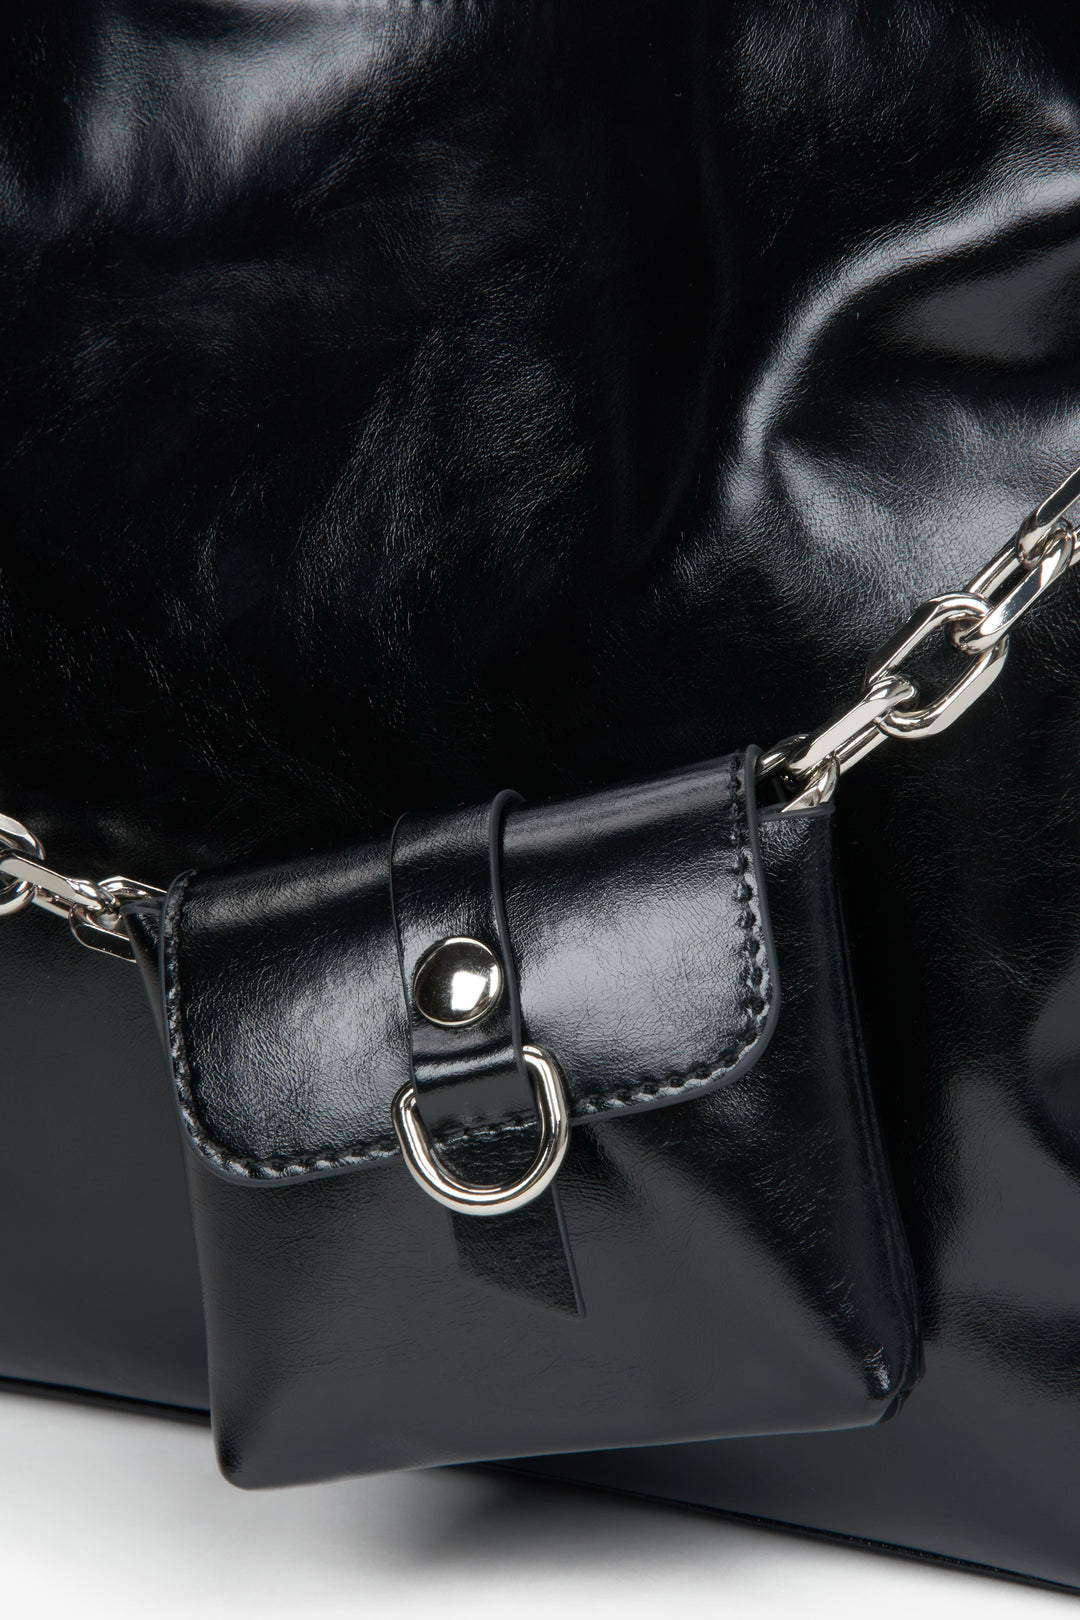 Women's black handbag Estro - a close-up on details.